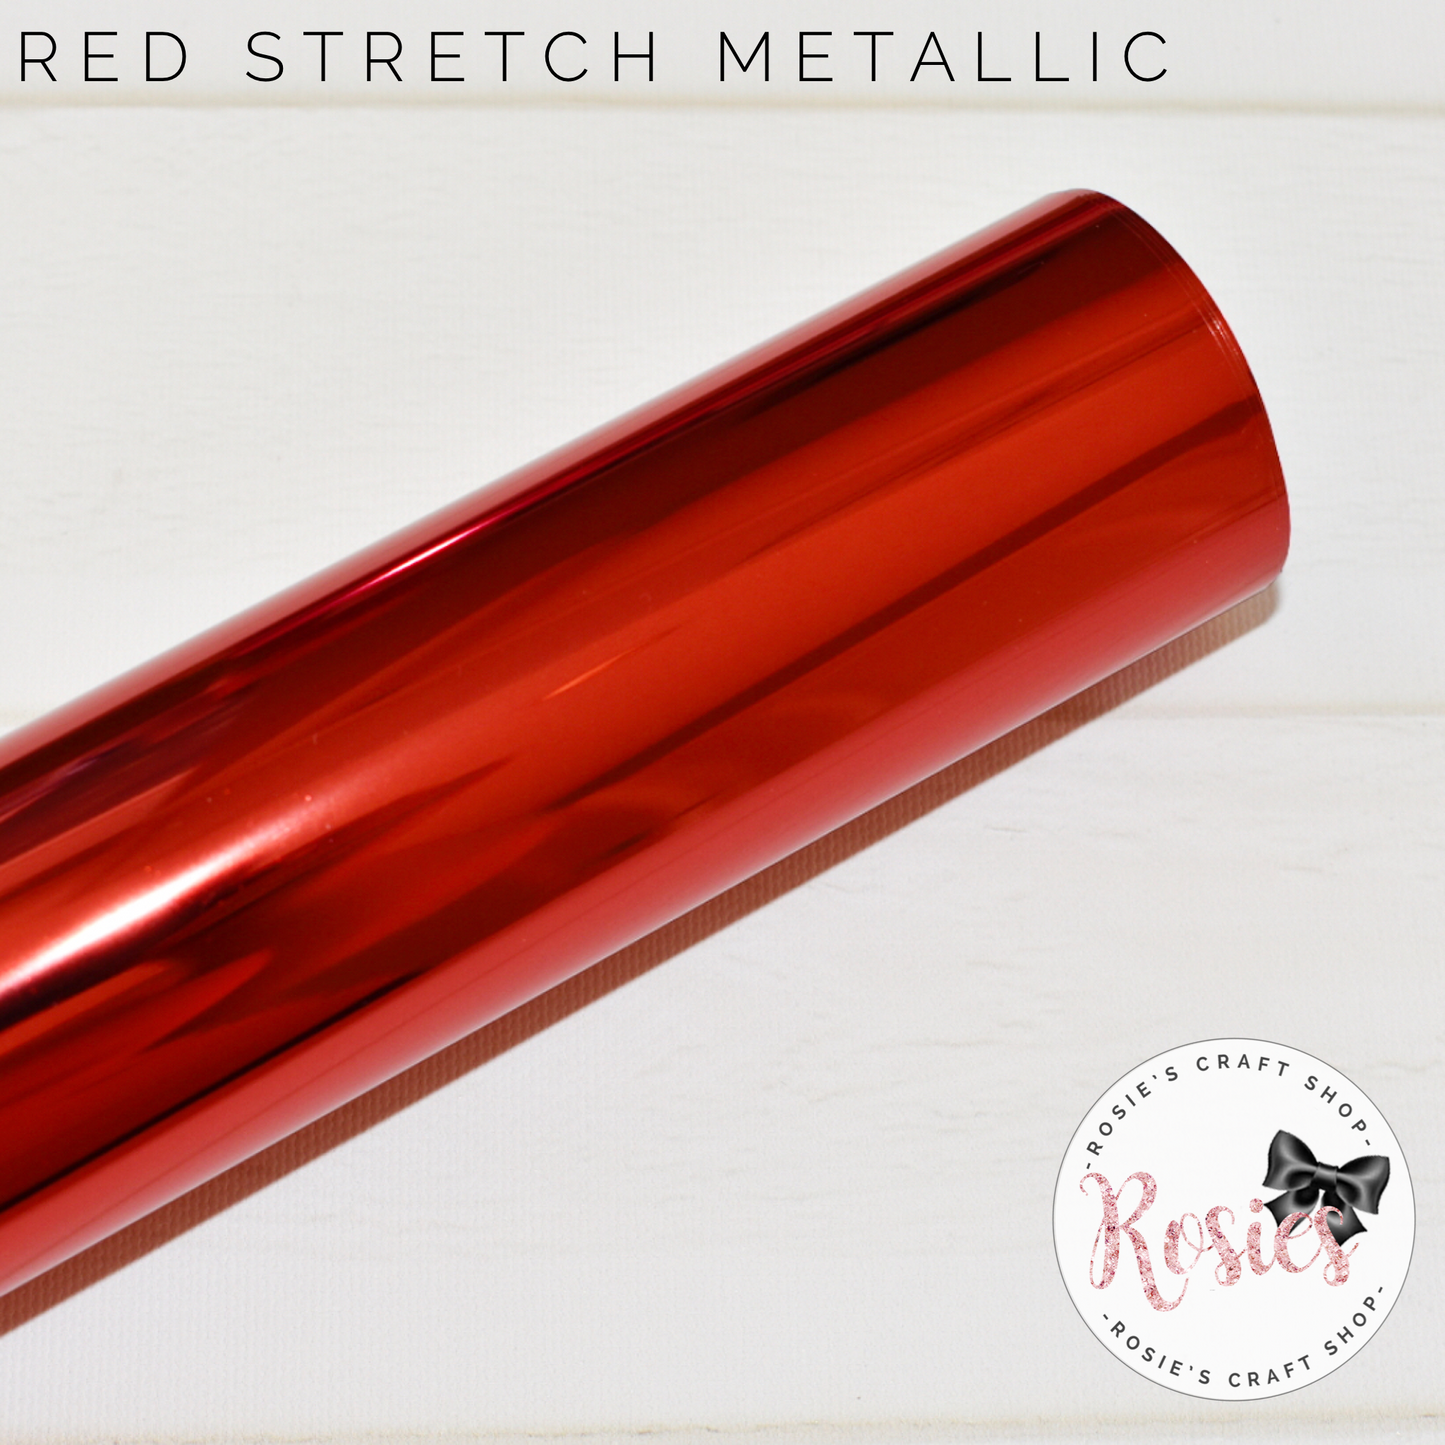 Red Metallic Stretch Iron On Vinyl HTV - Rosie's Craft Shop Ltd